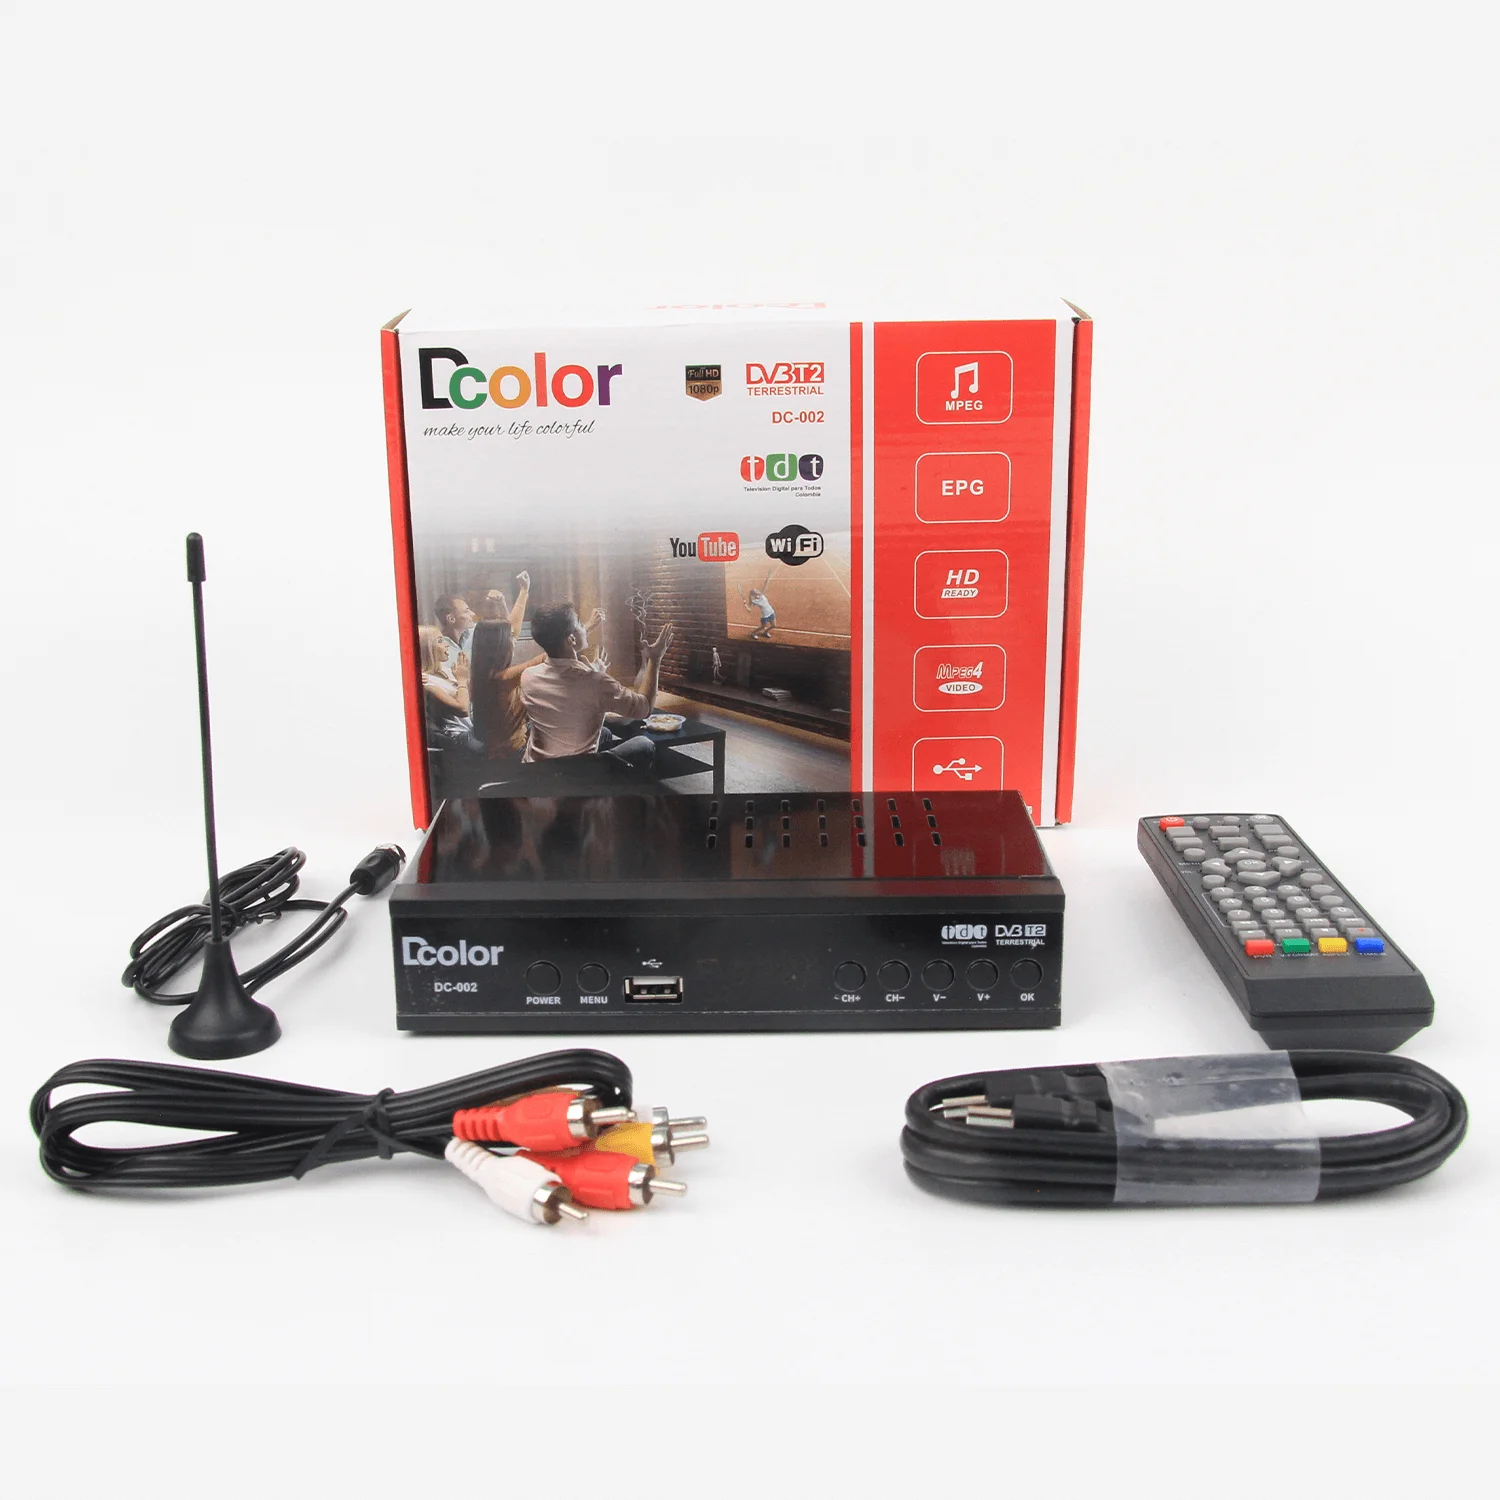 Hotselling DVB-T2 Tdt Digital TV Decodificador Set Top Box for